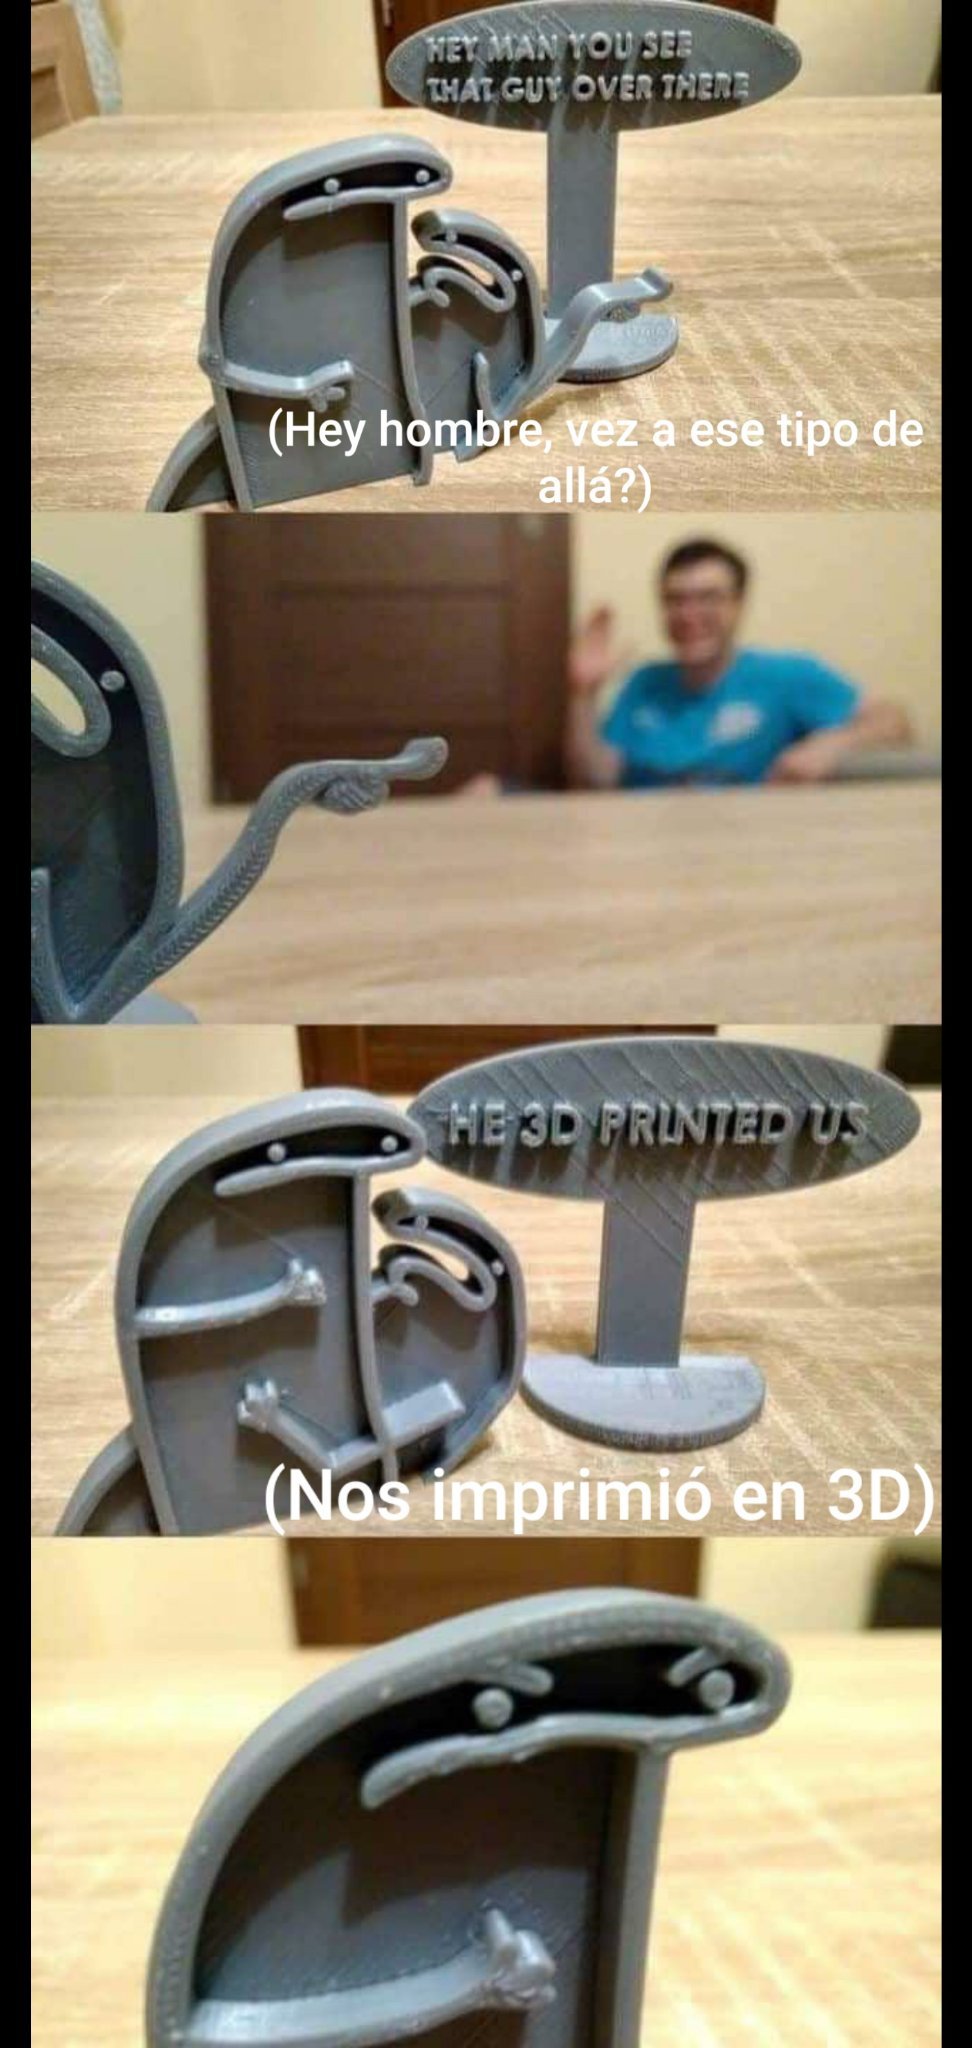 3D printed - meme